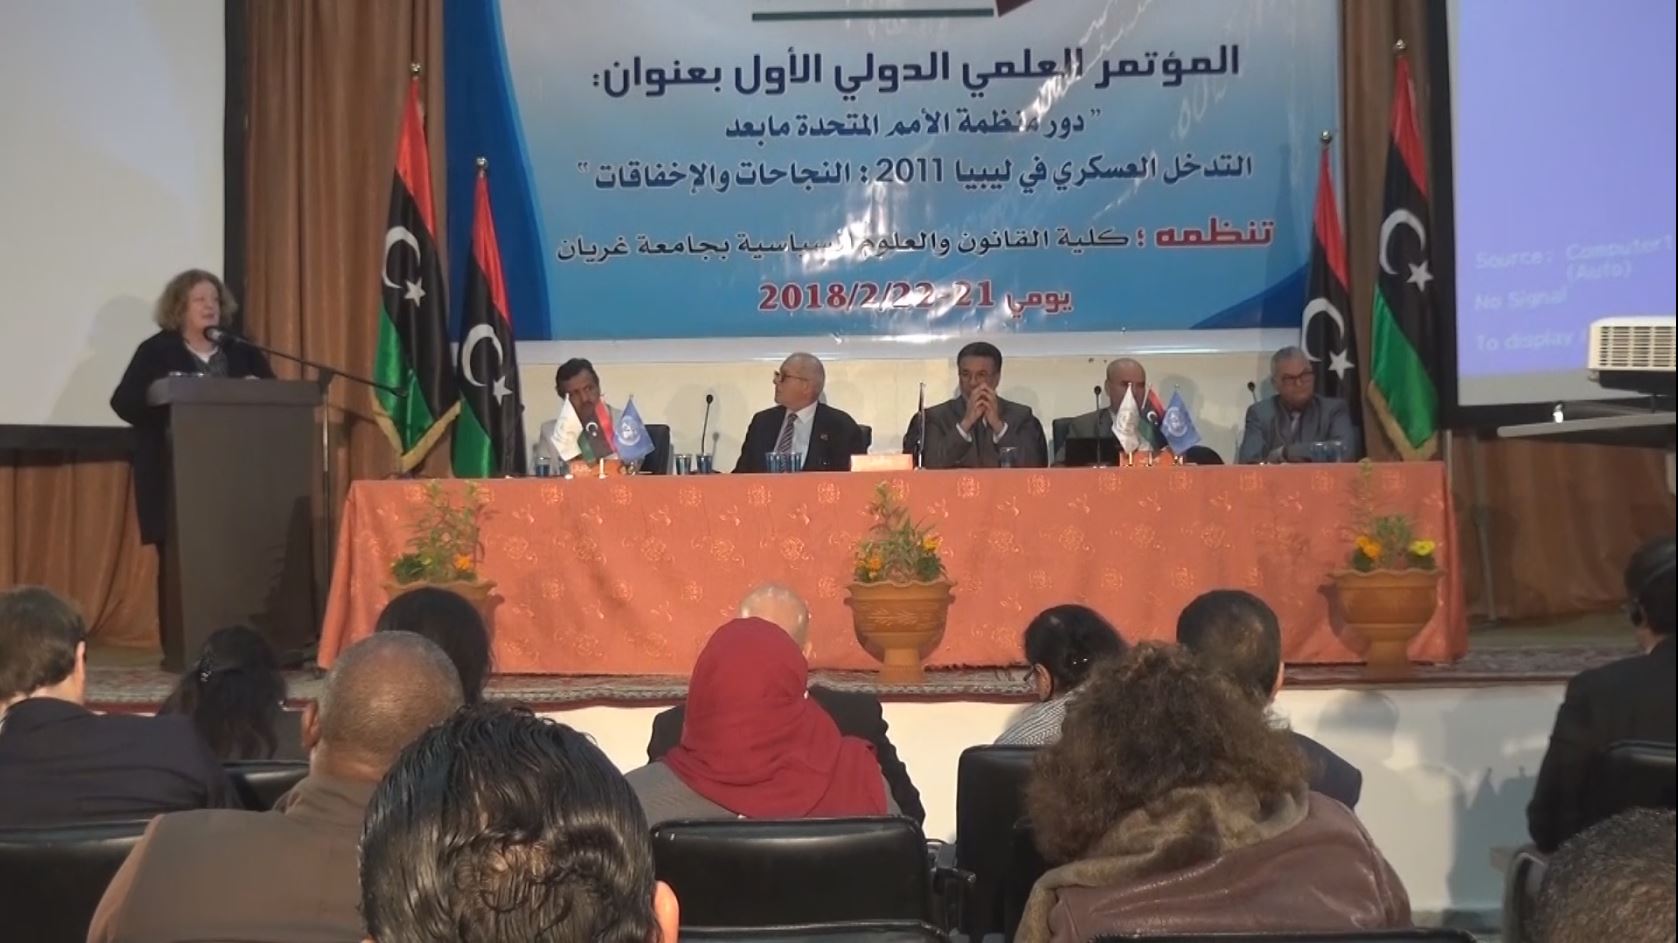 غريان: انطلاق المؤتمر العلمي الأول حول دور الأمم المتحدة في ليبيا